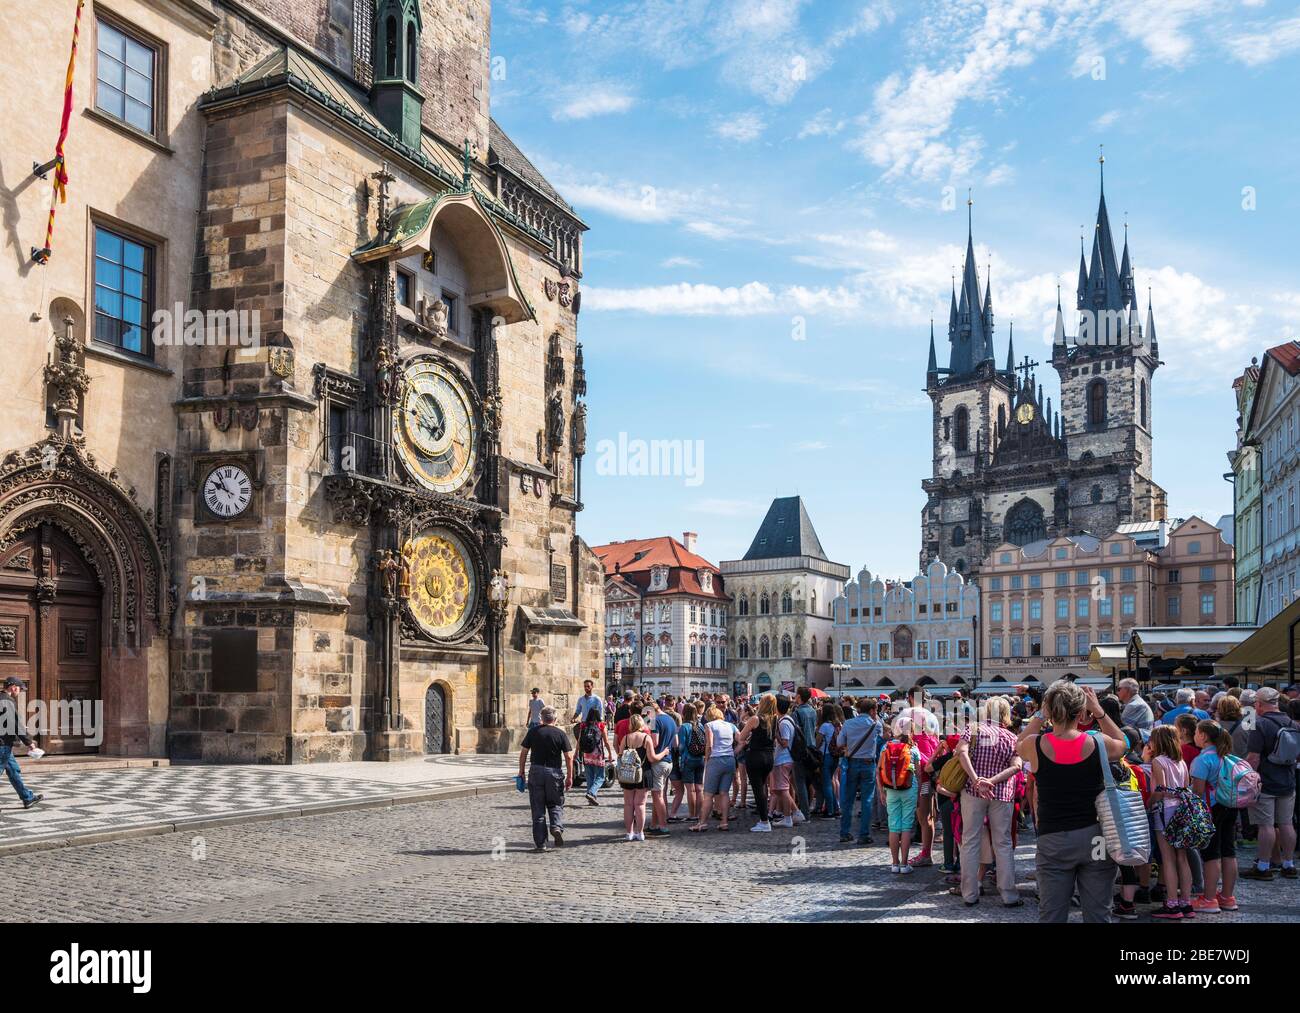 Die Astronomische Uhr (1410) auf dem Altstädter Ring ist eine mittelalterliche astronomische Uhr in Prag, Tschechien. Stockfoto